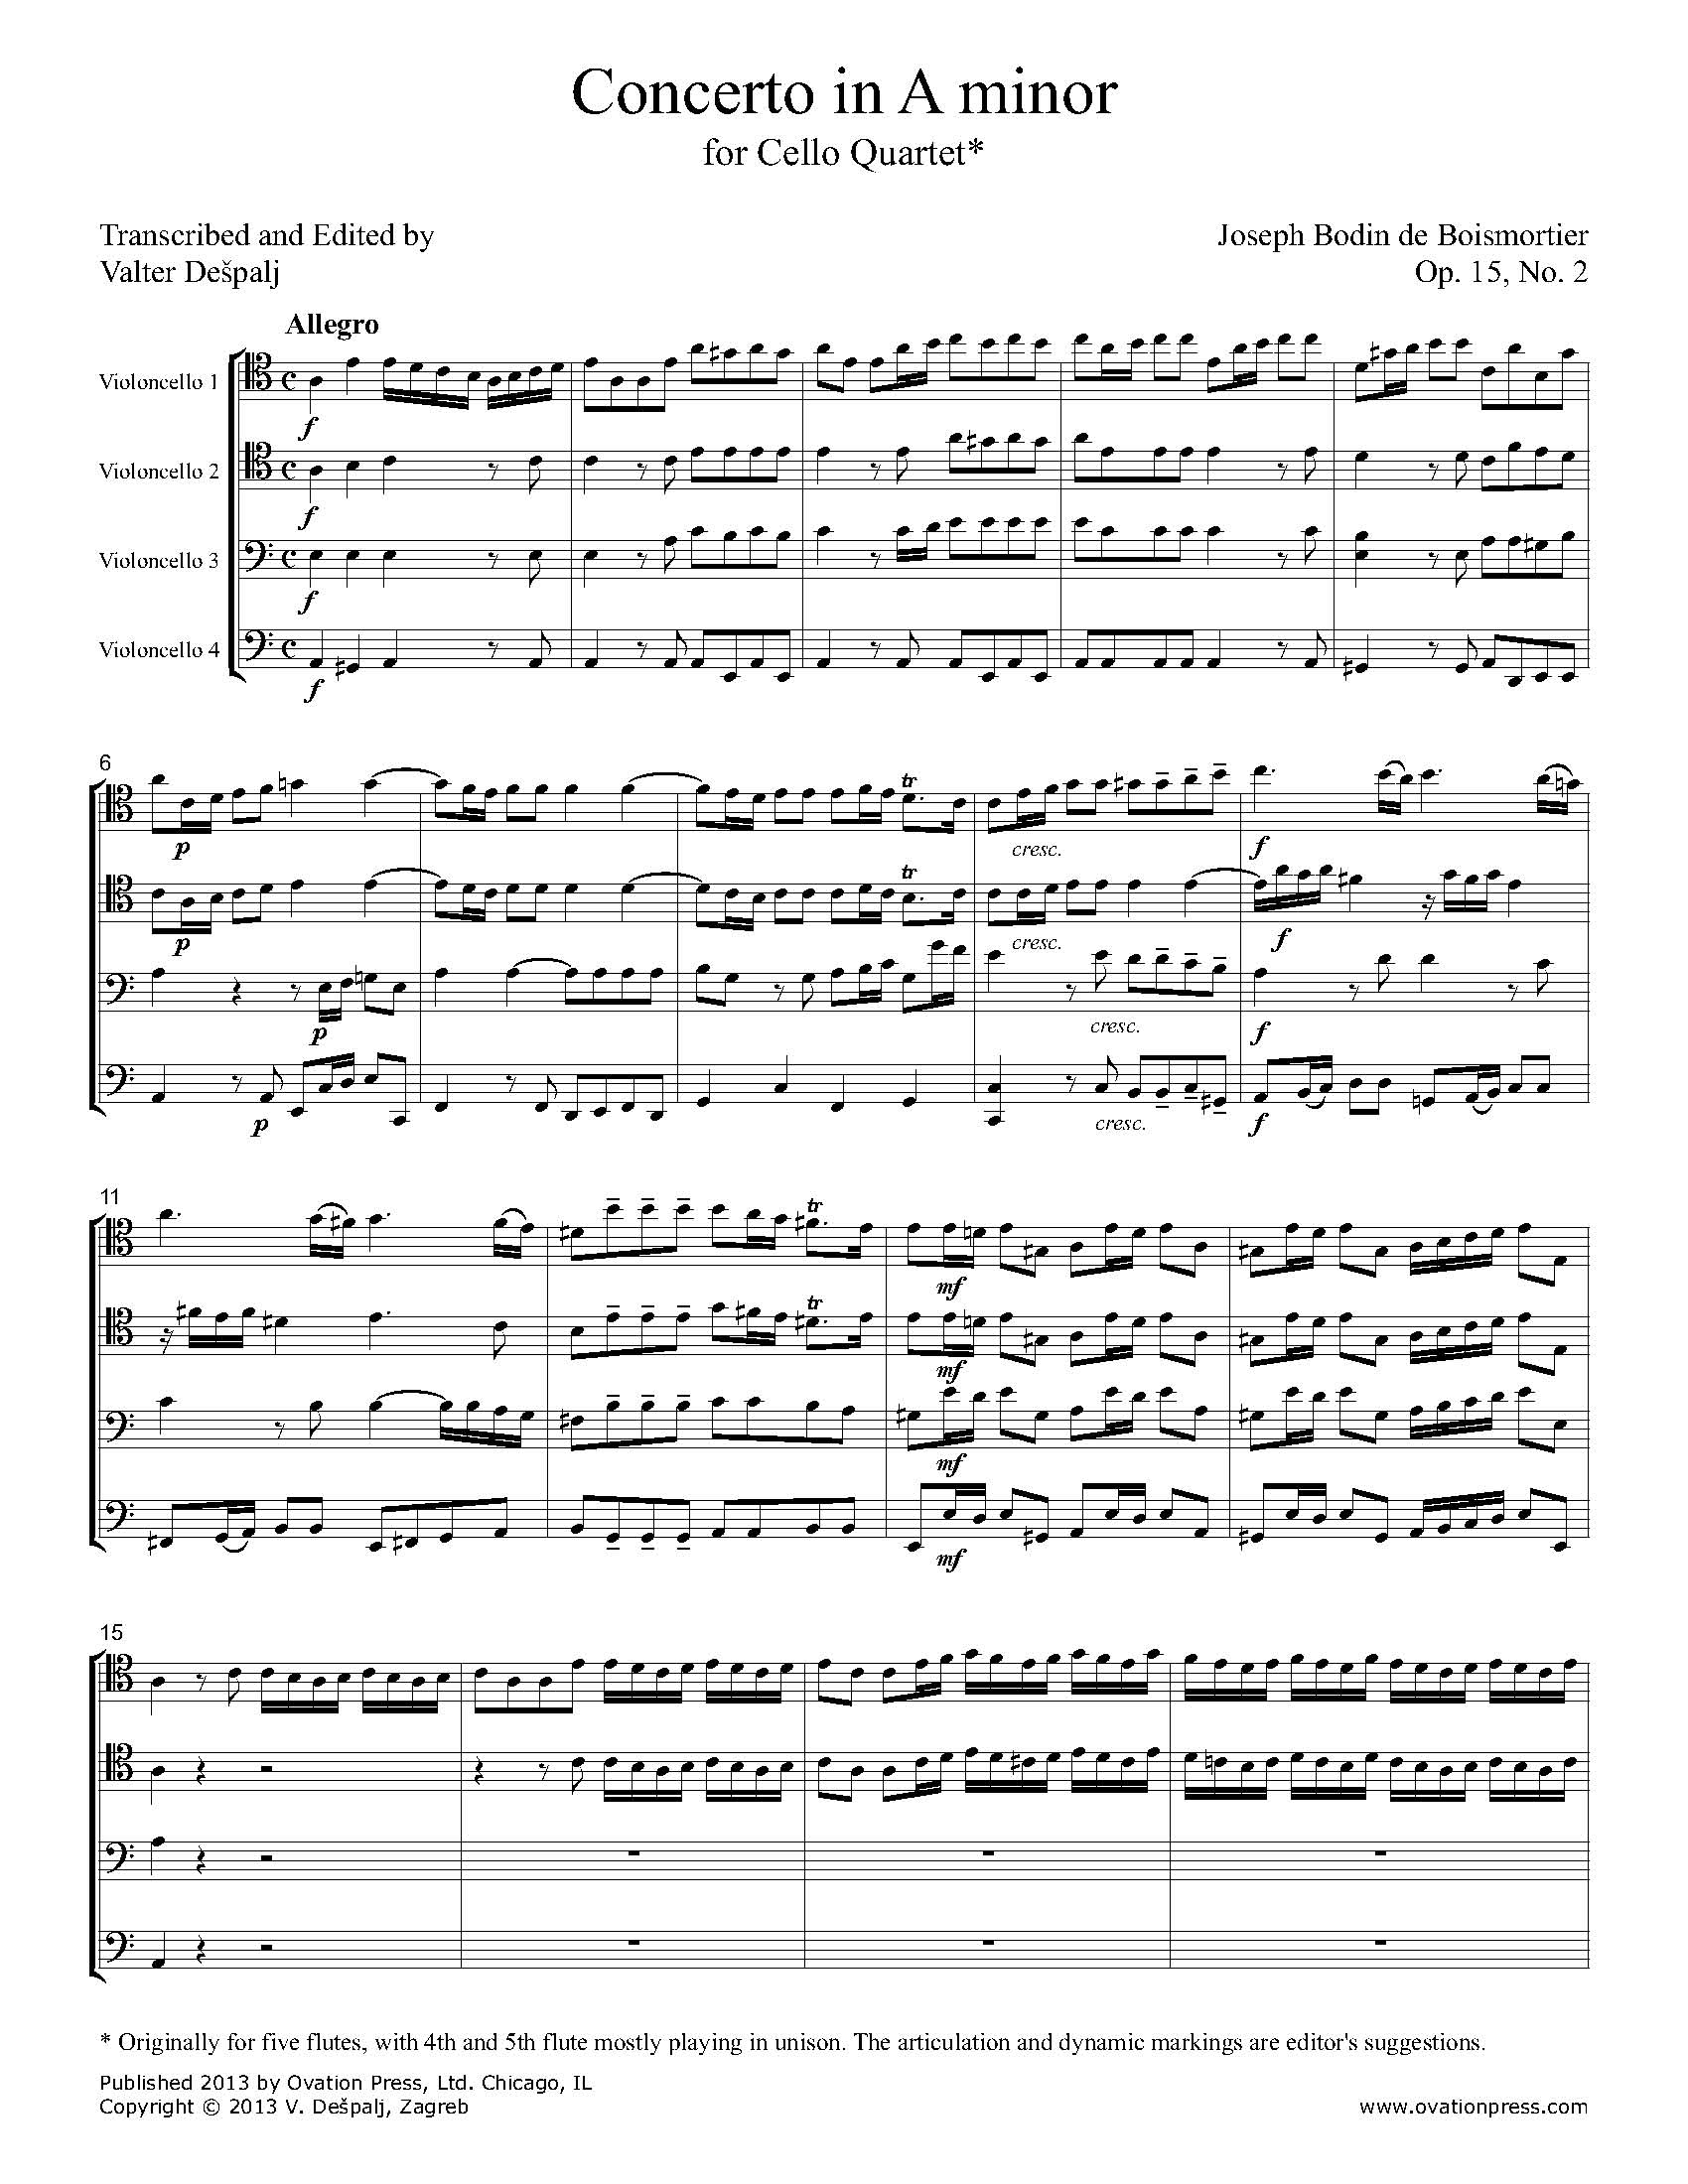 Boismortier Concerto in A minor Transcribed for Cello Quartet